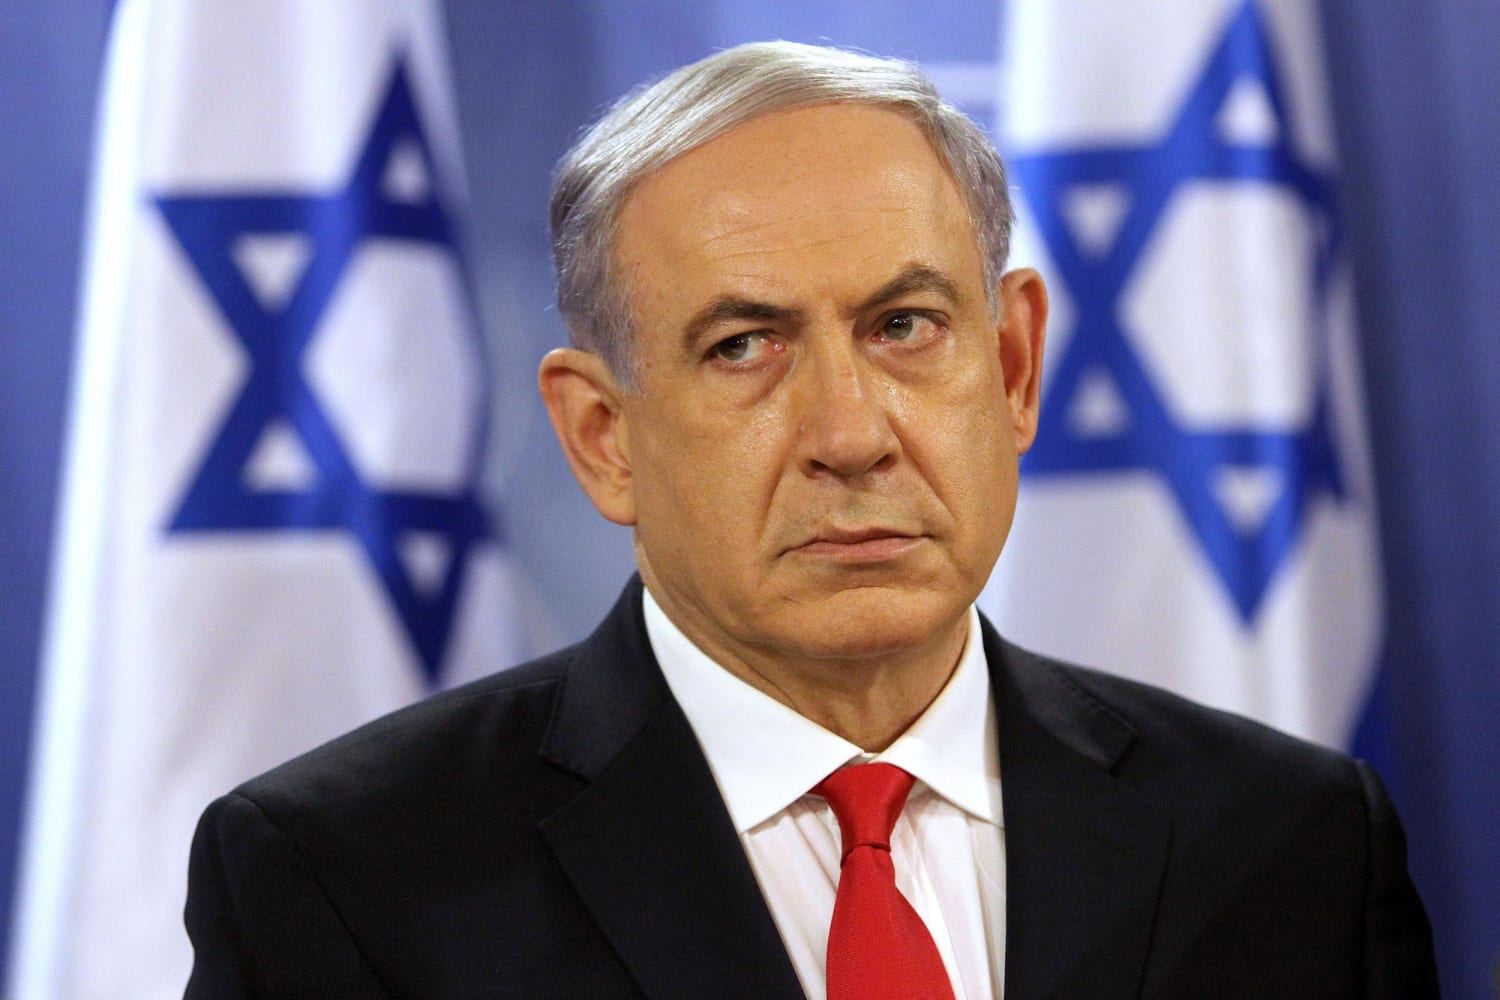 Deux diplomates israéliens menacés de sanctions pour des retweets anti-Netanyahu